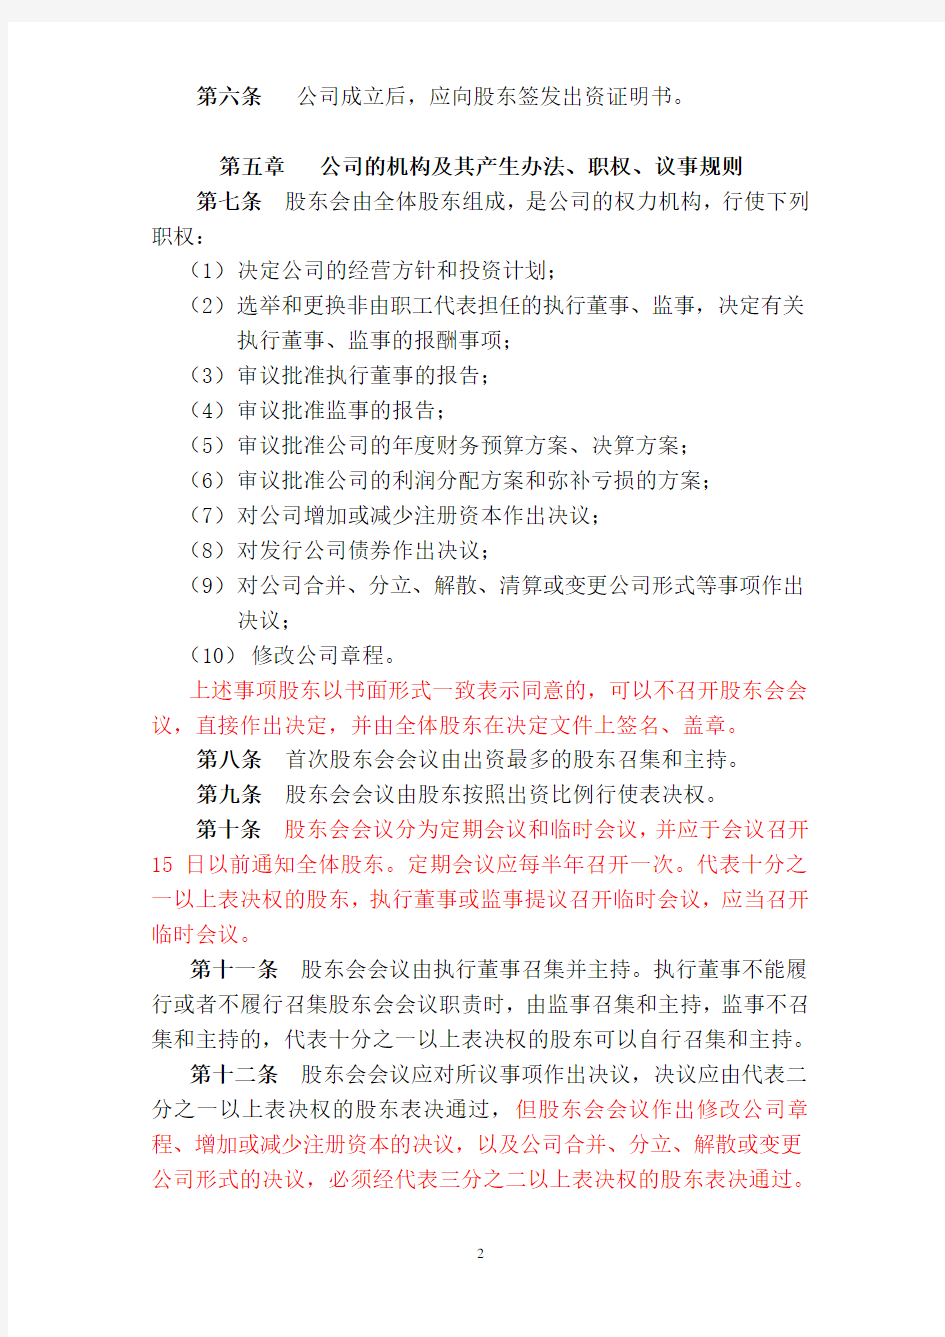 上海XX限责任公司章程(执行董事)